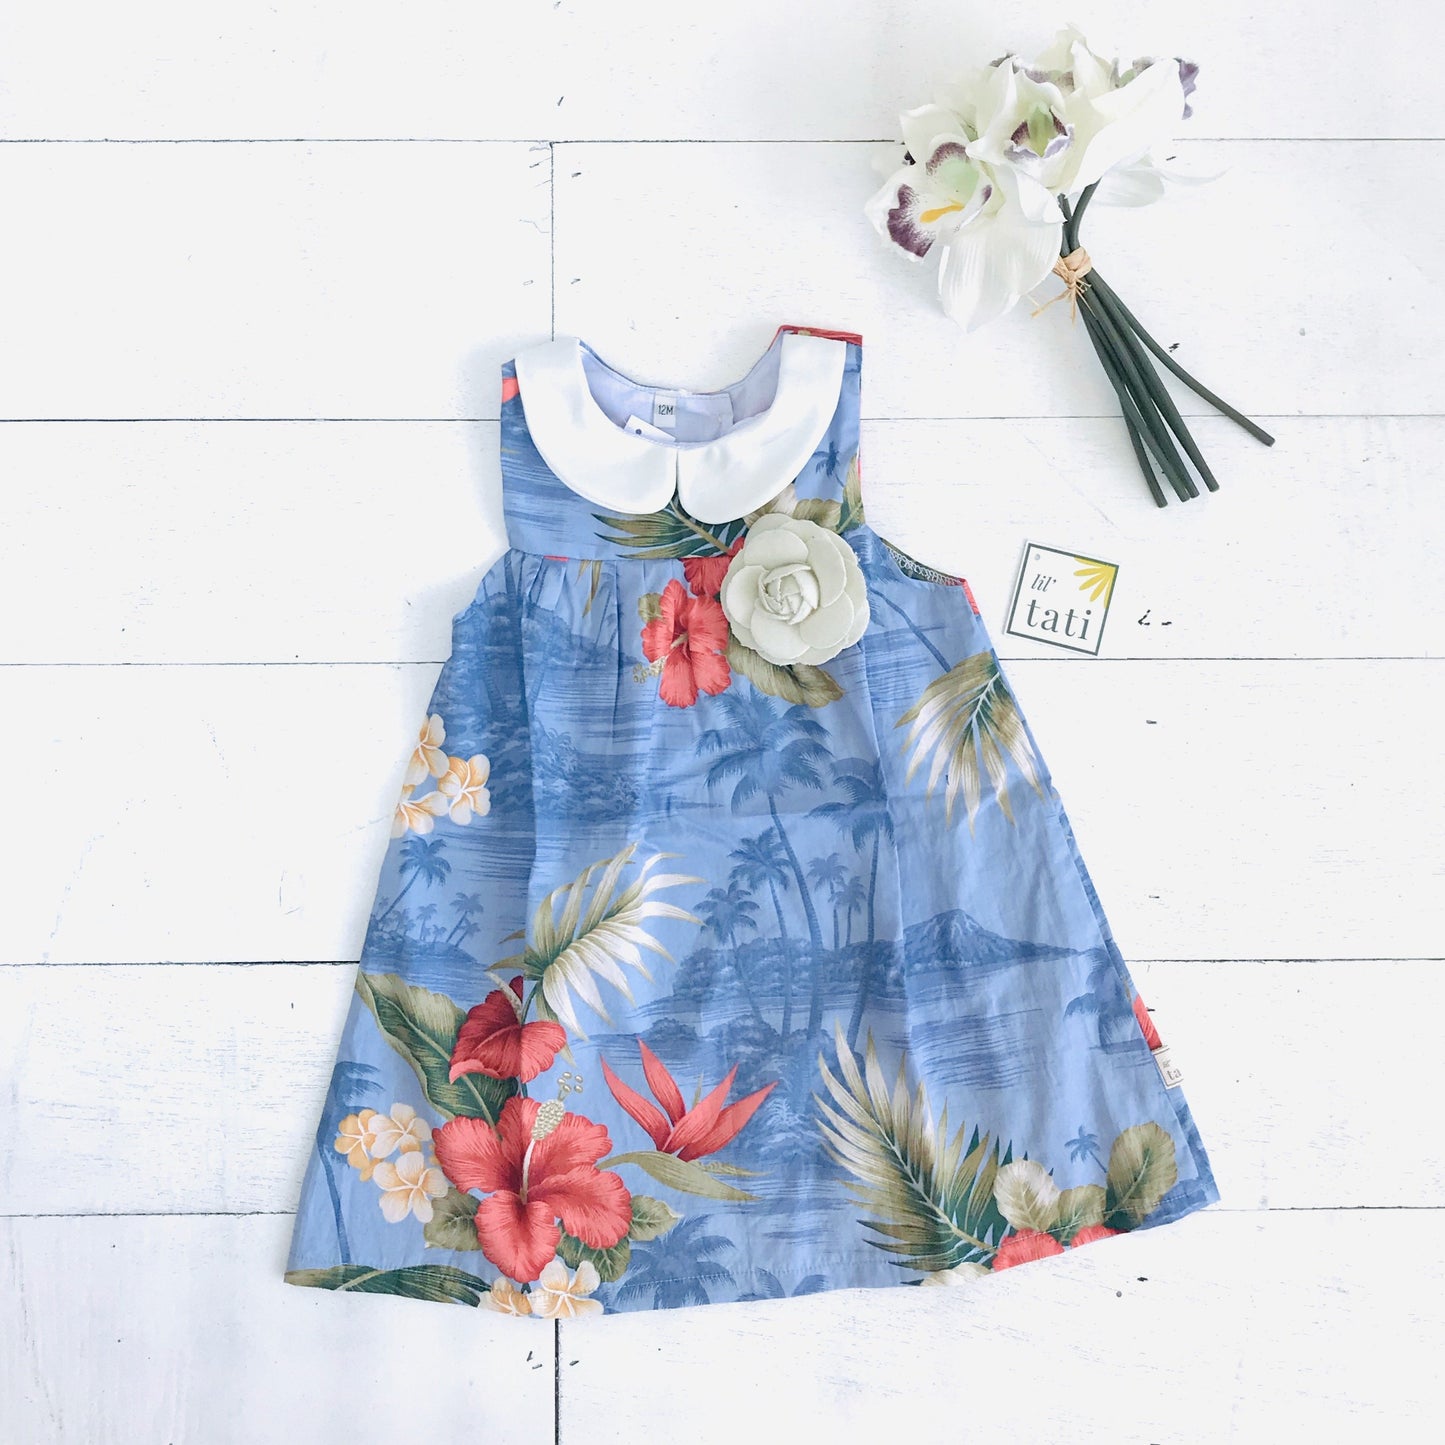 Tea Rose Dress in Hawaiian Blue - Lil' Tati